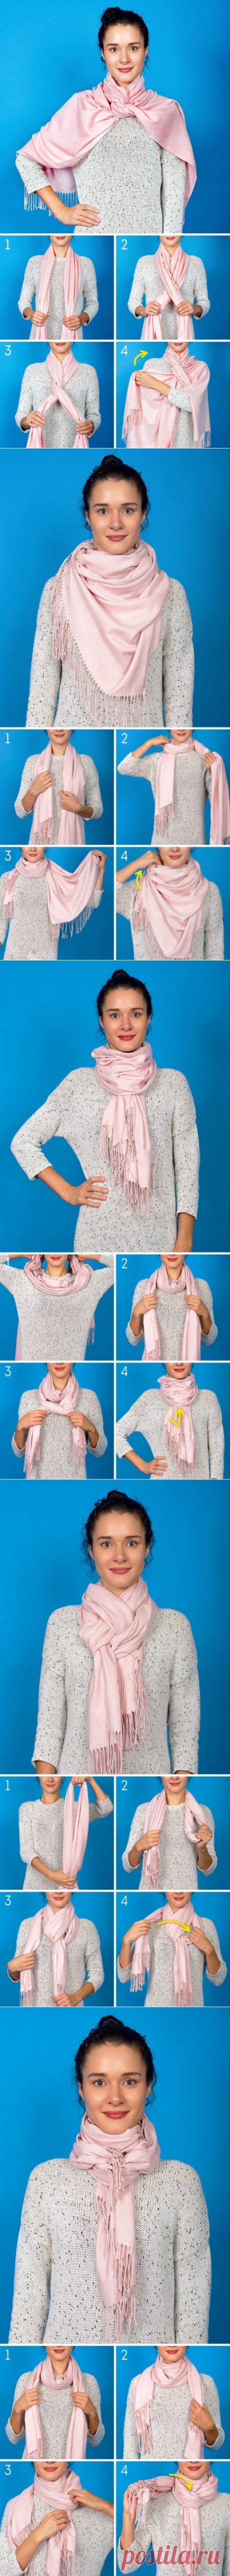 Украшаем осенний образ с помощью шарфа — 7 вариантов